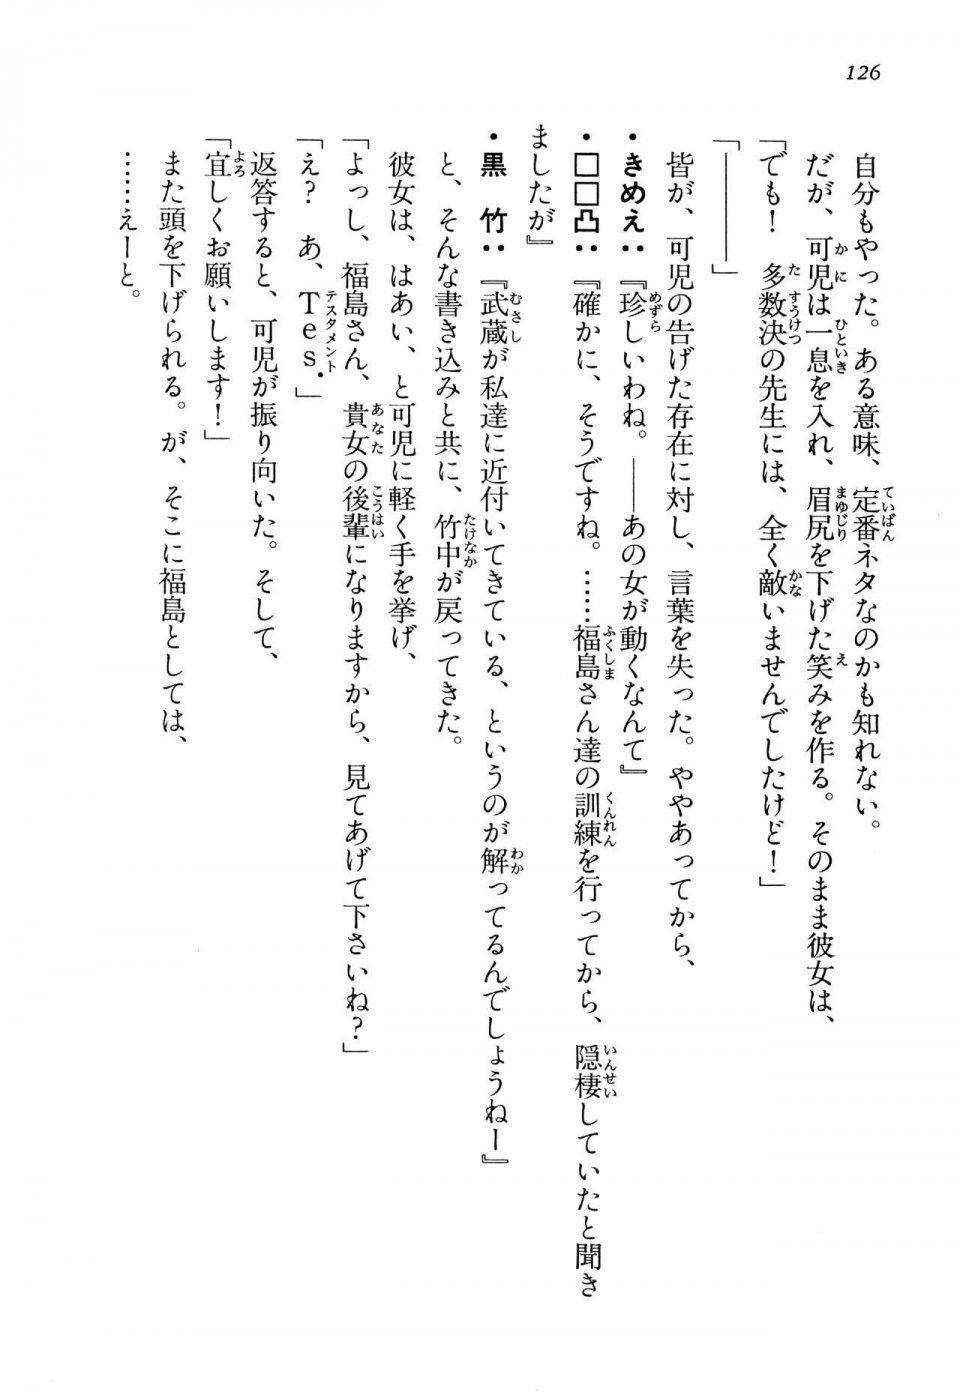 Kyoukai Senjou no Horizon LN Vol 13(6A) - Photo #126